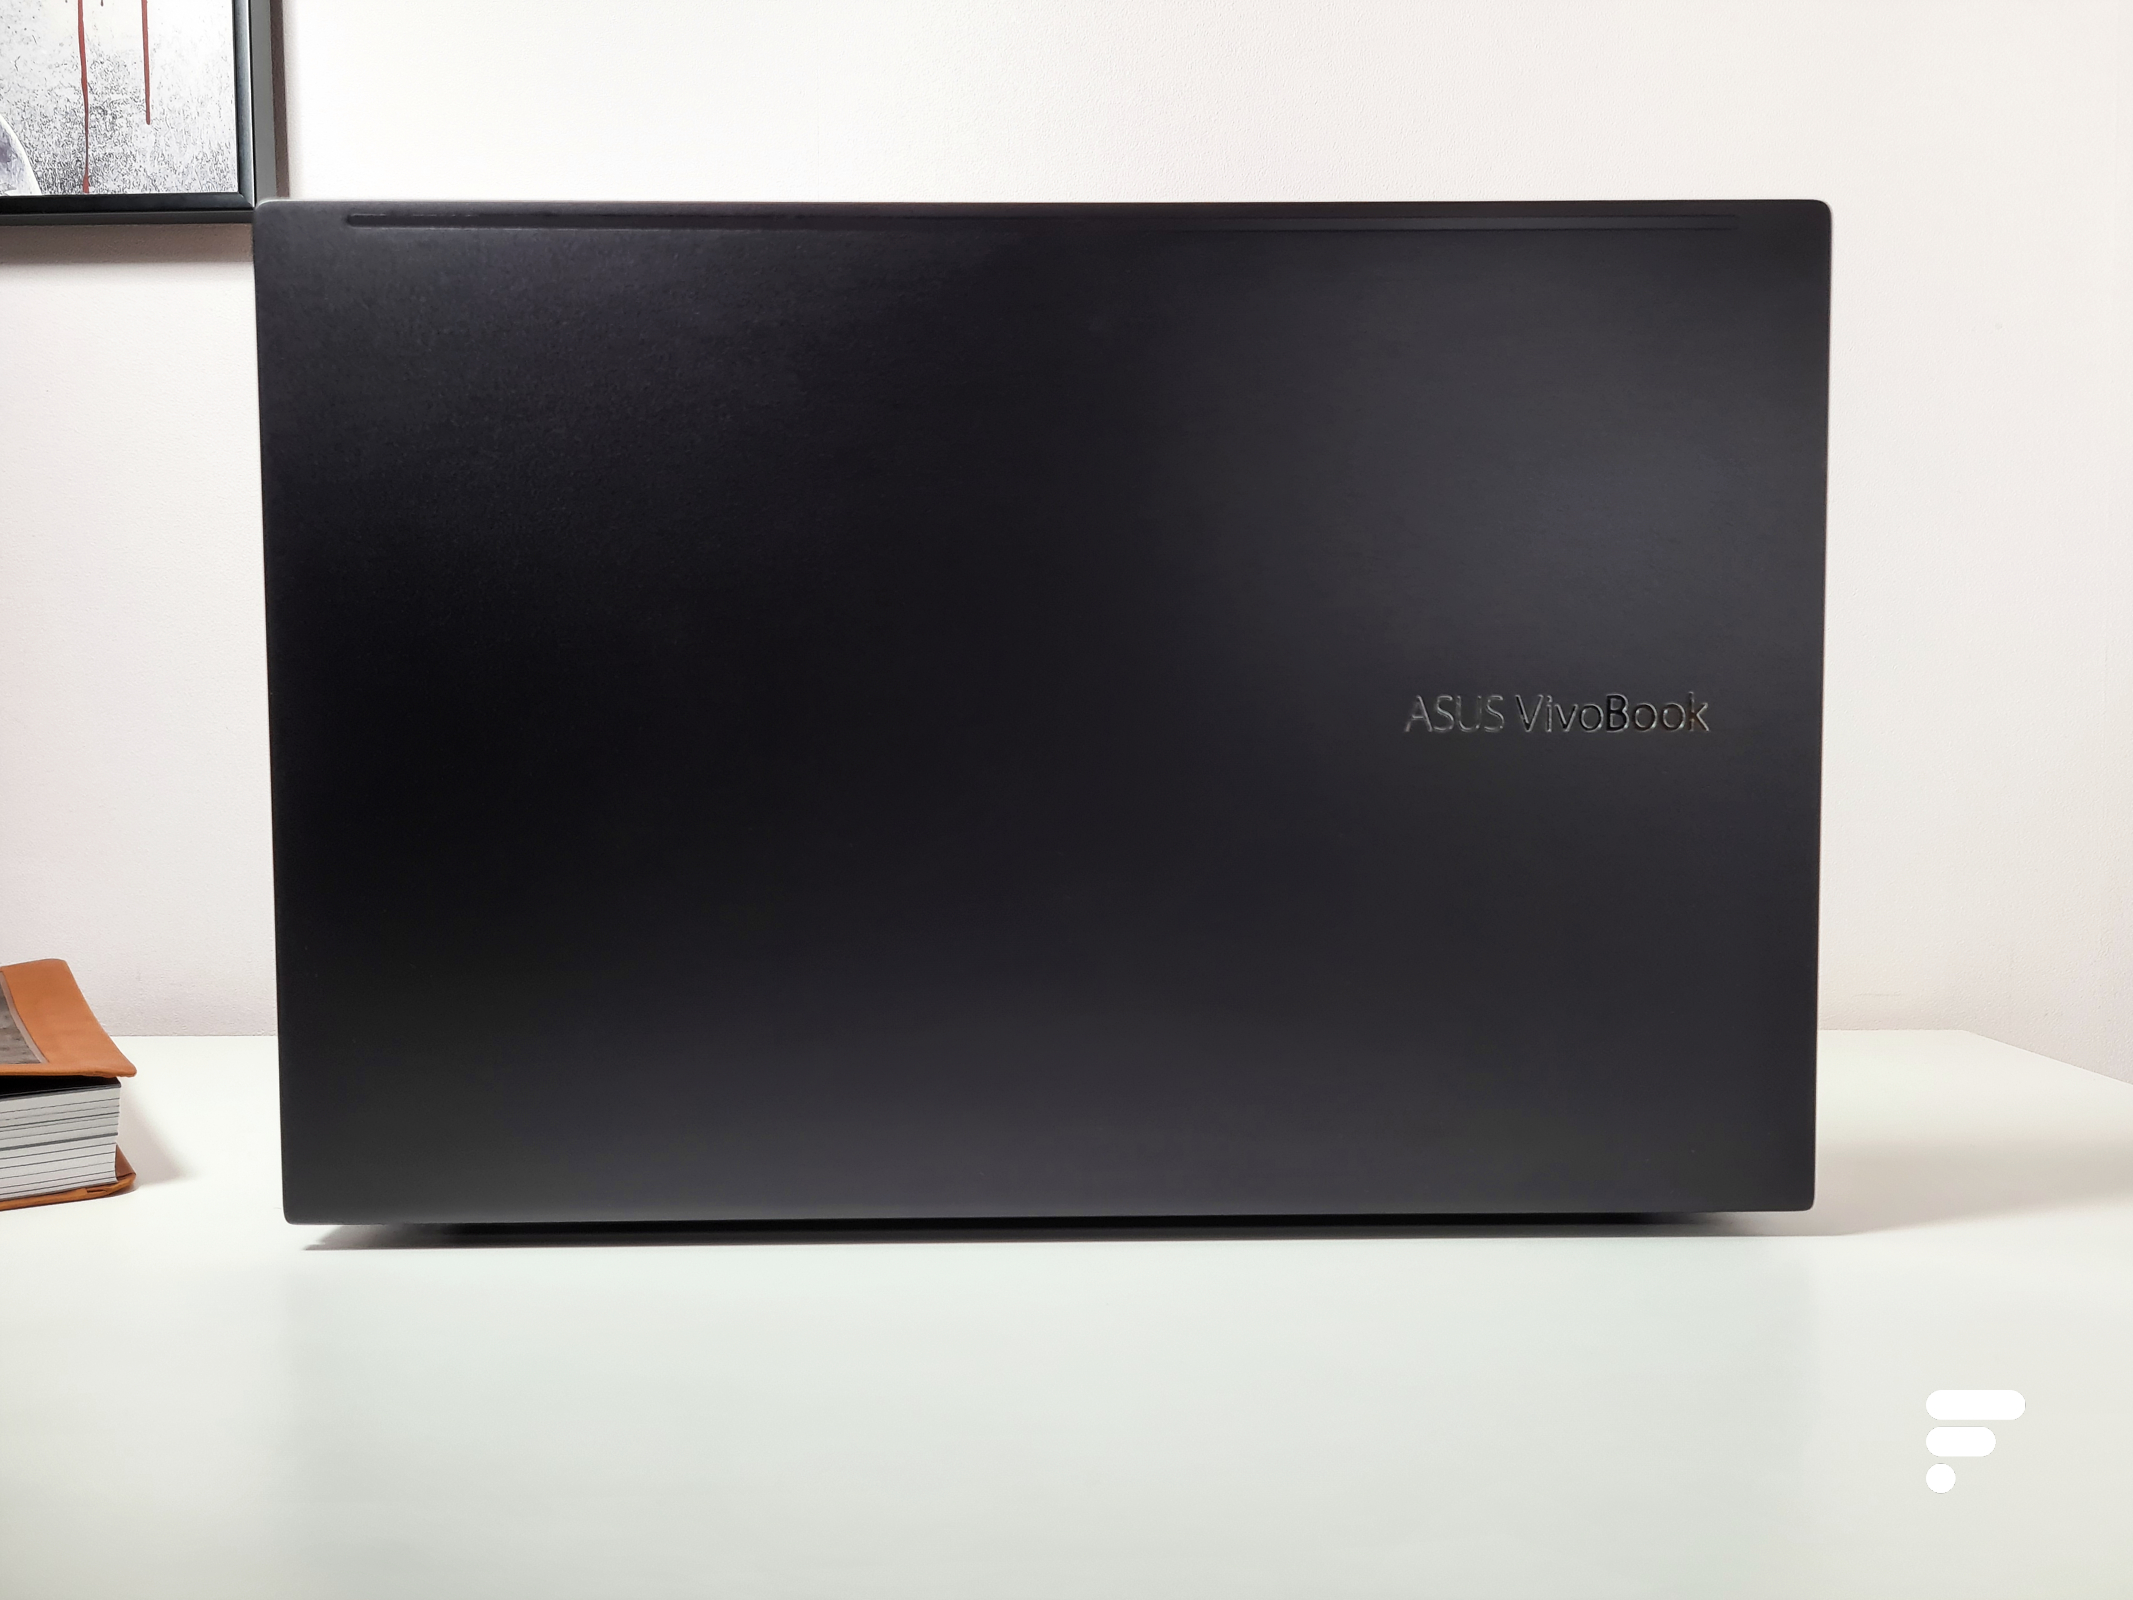 Test PC Portable Asus VivoBook 15 : service minimum en bureautique - Les  Numériques